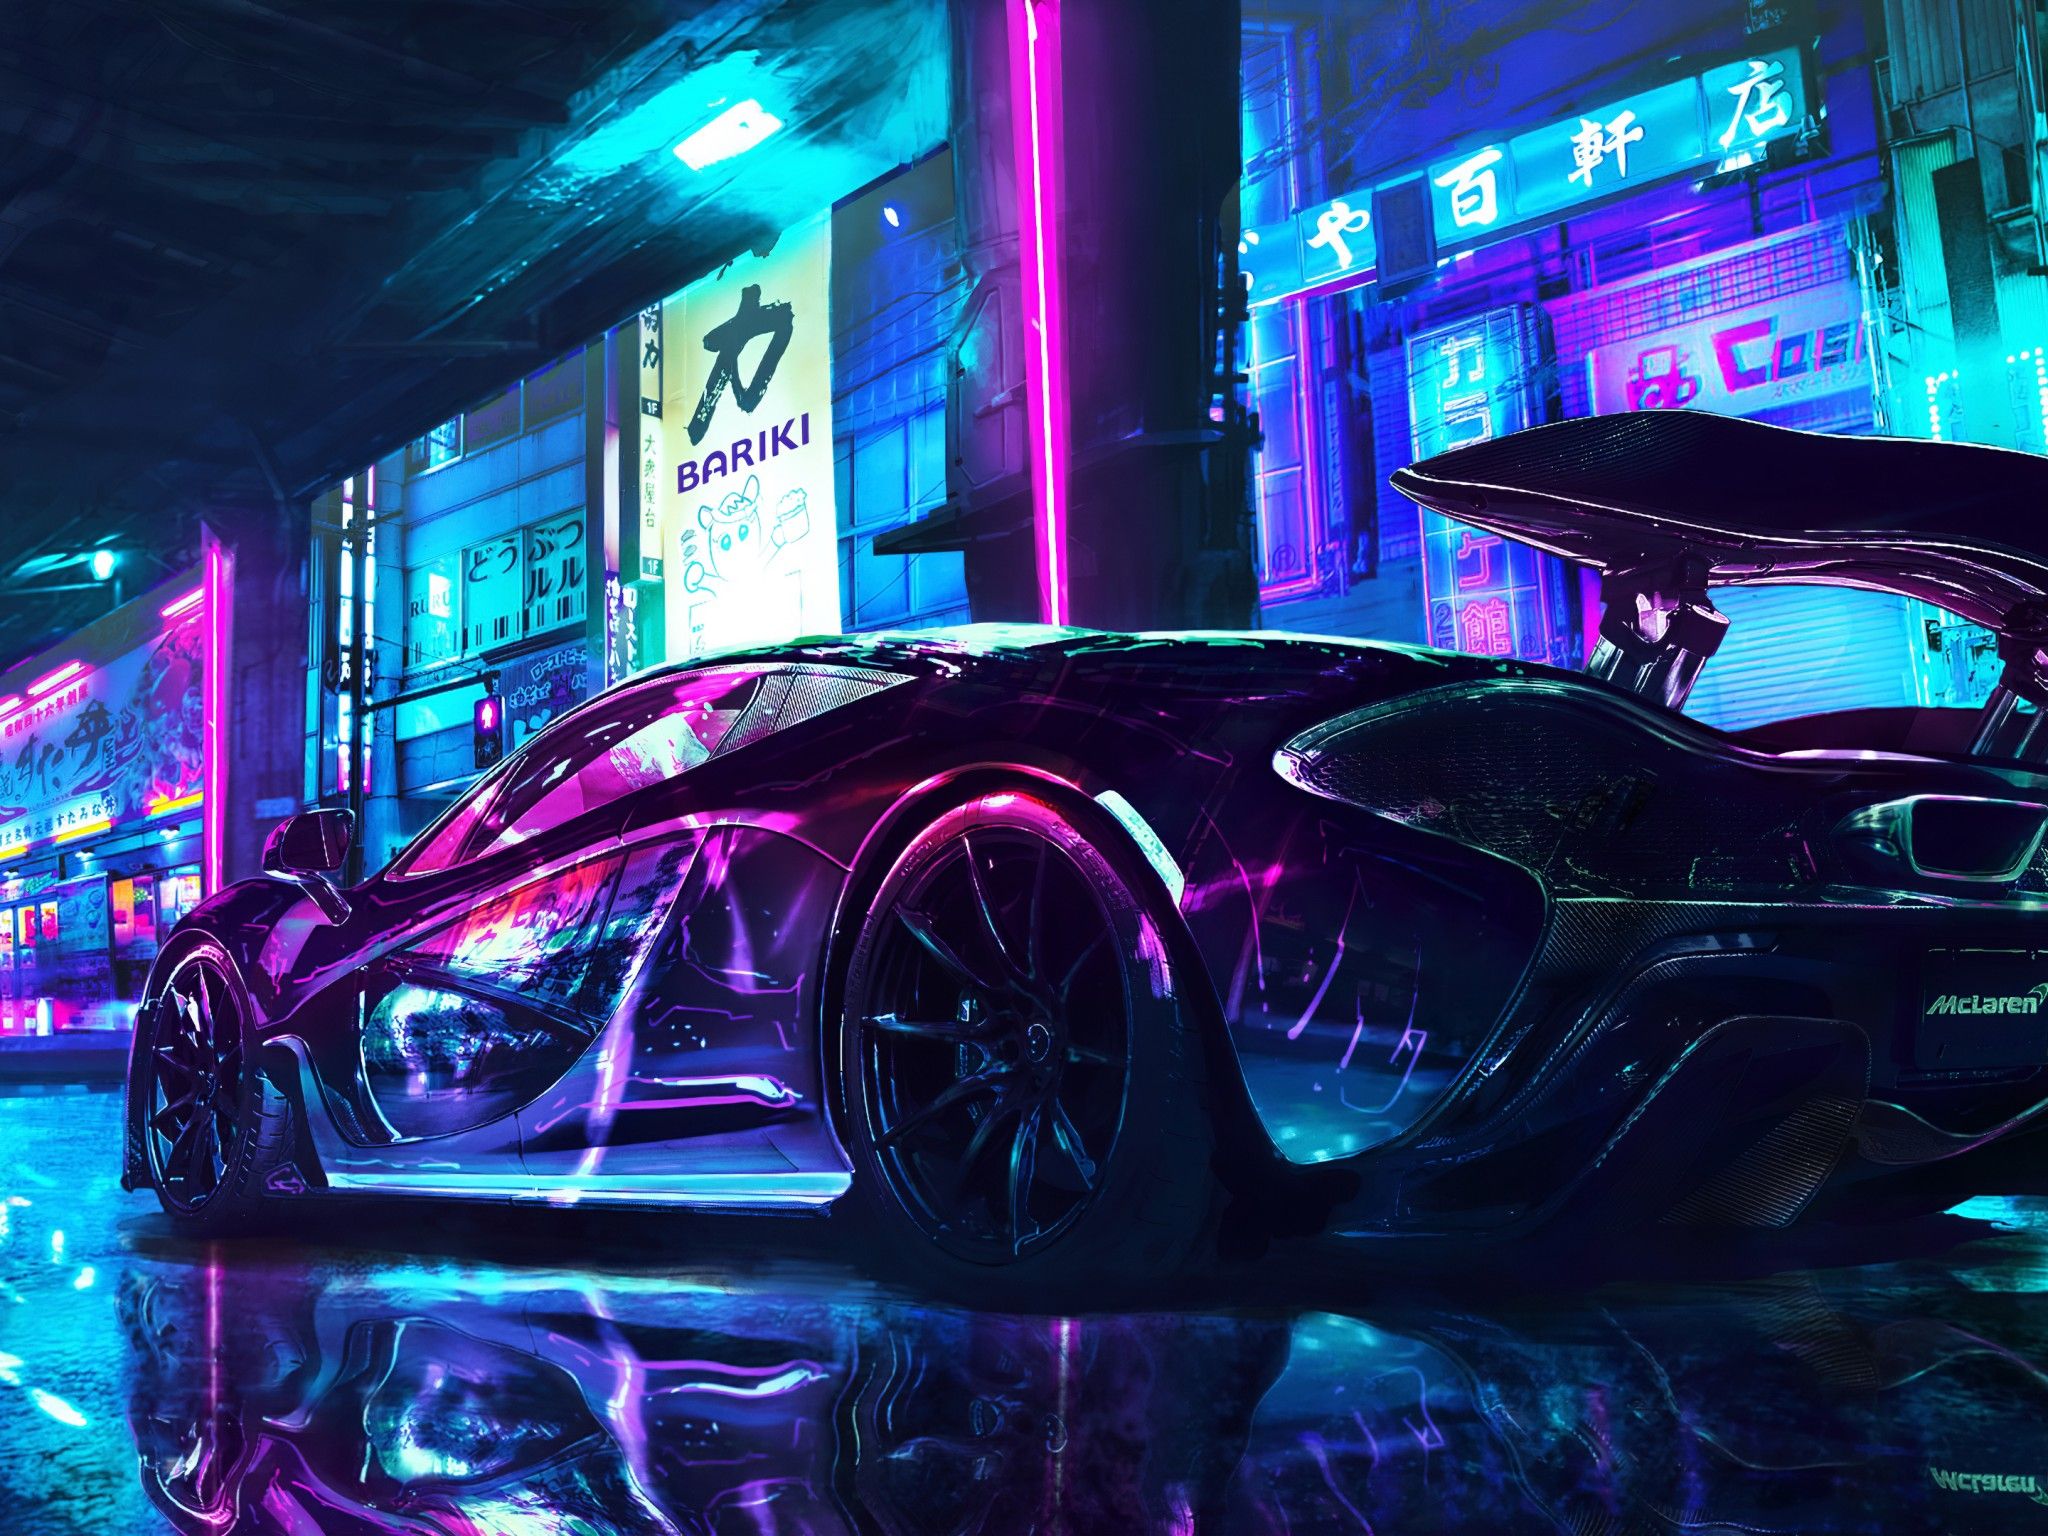 Cyberpunk 4K Wallpaper, McLaren, Supercars, Neon art, Cars